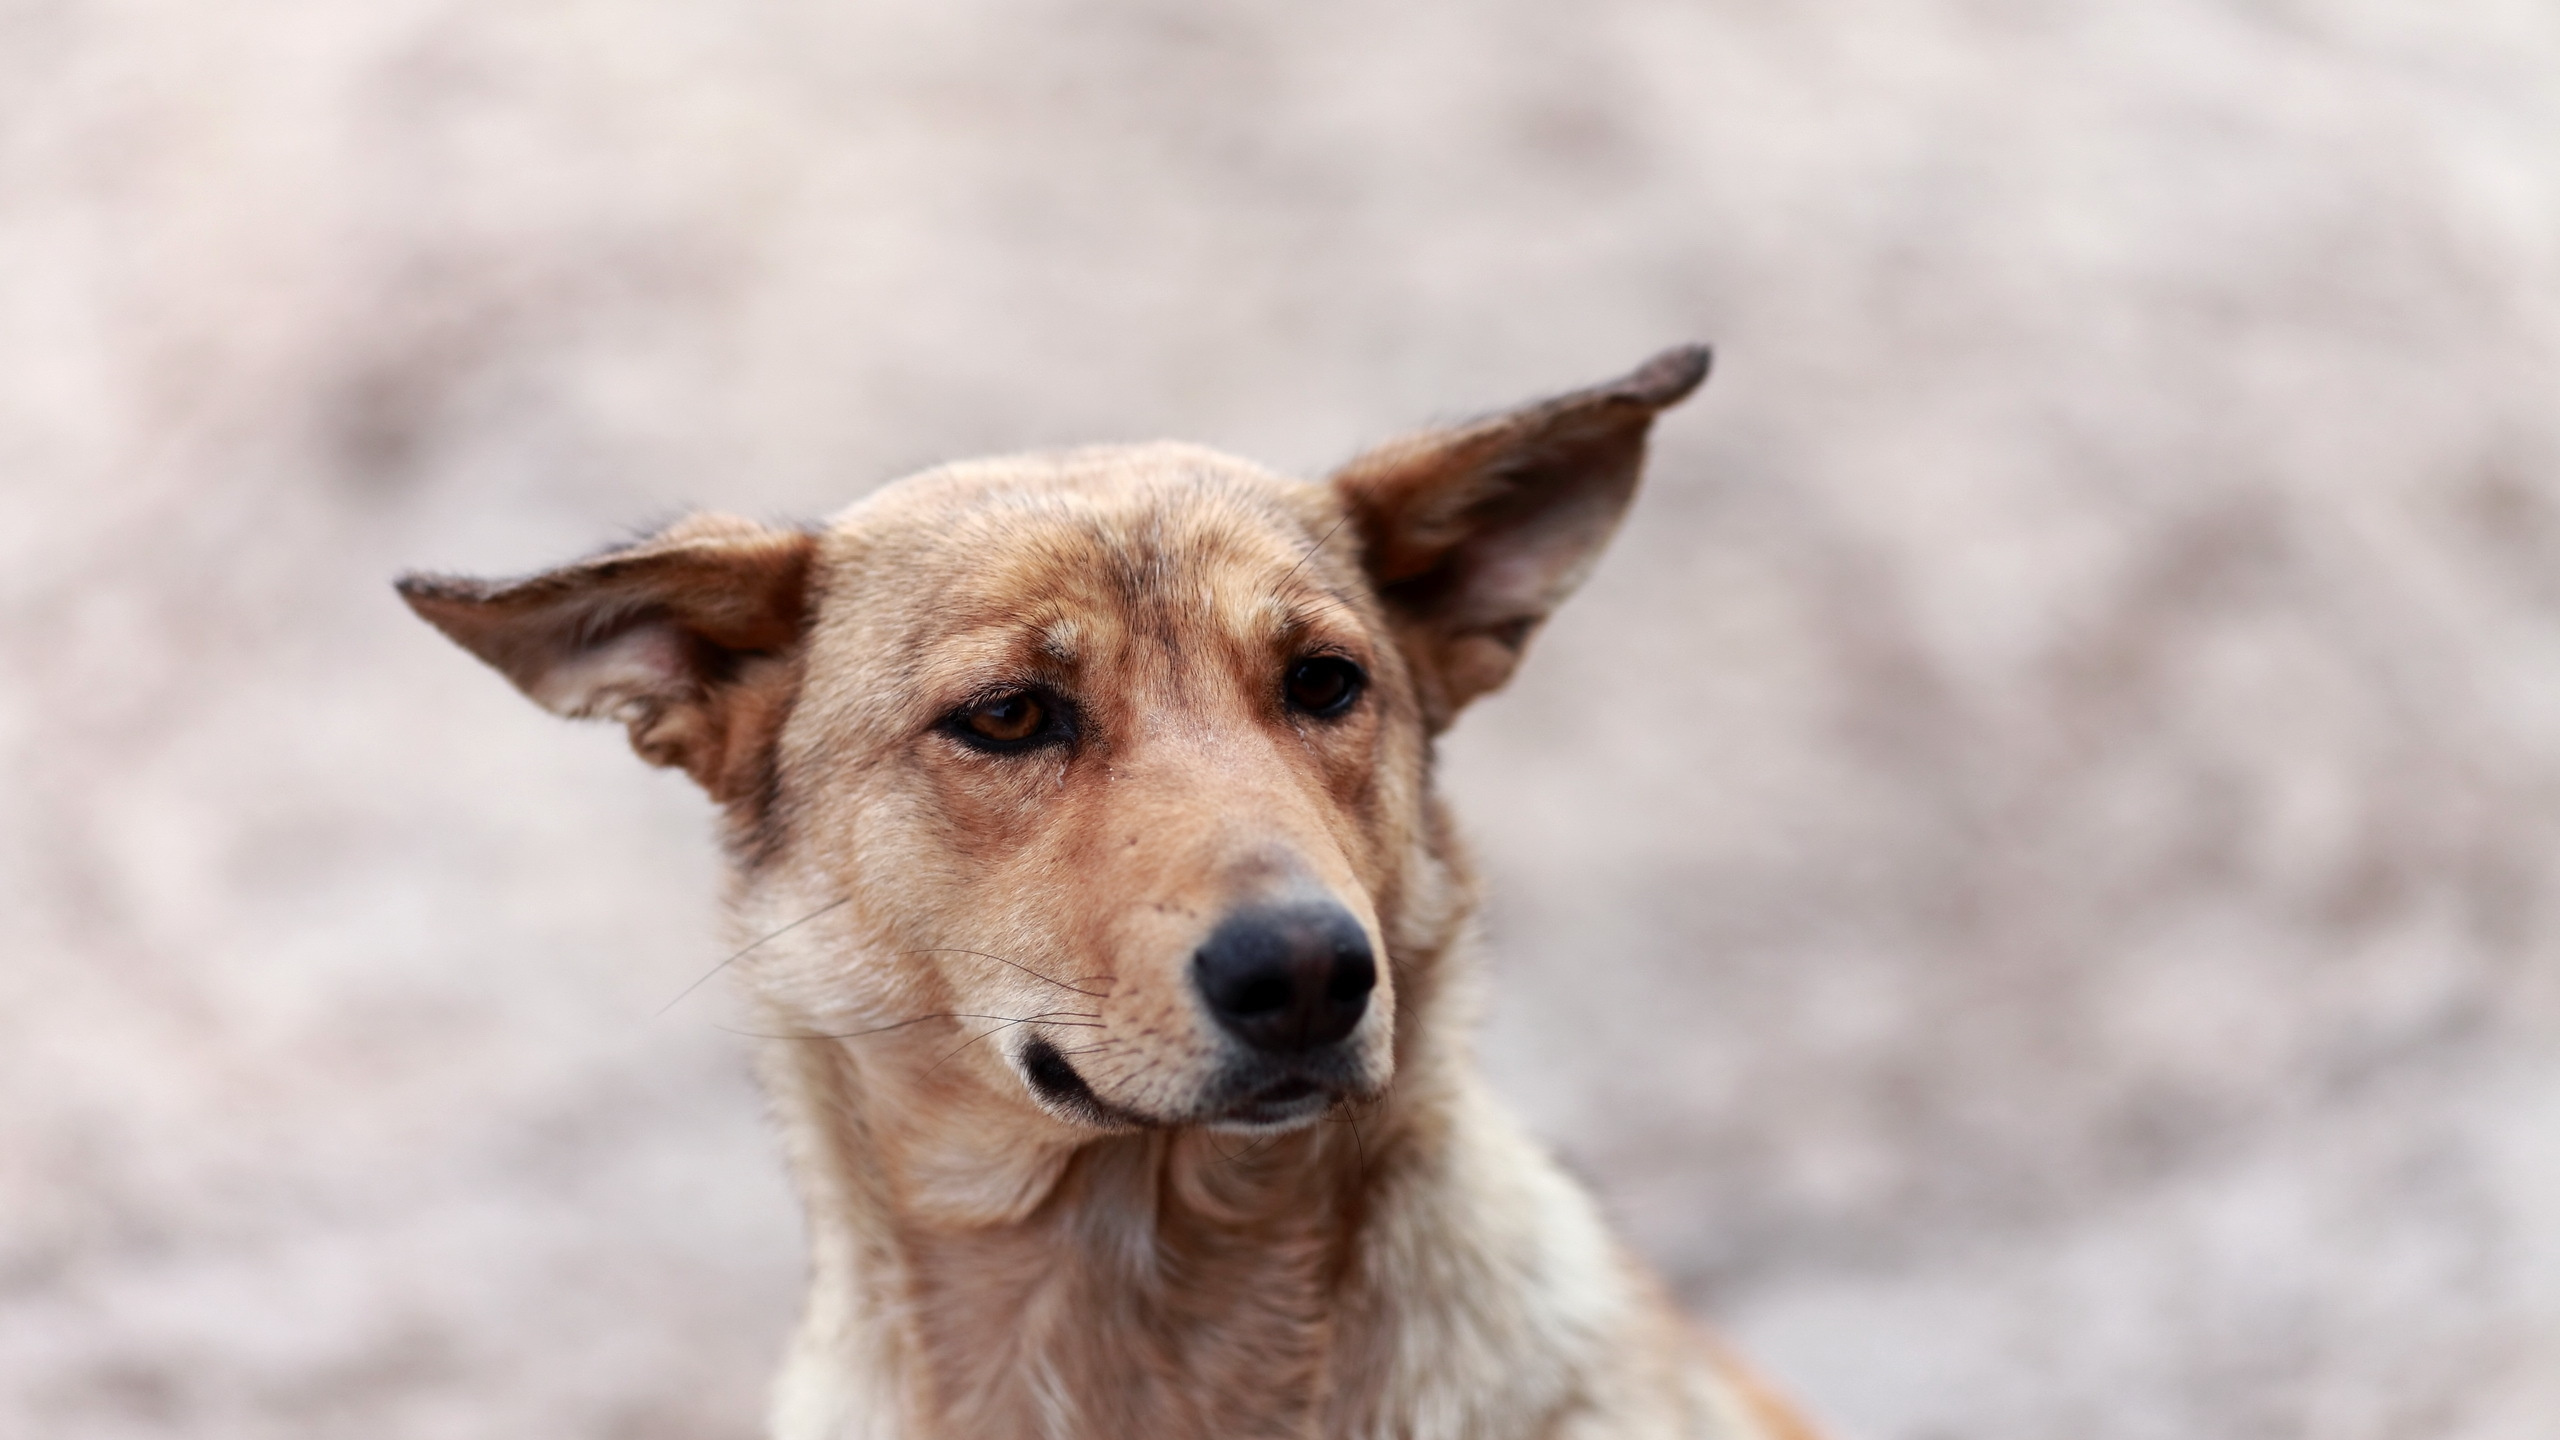 小狗, 品种的狗, 街头的狗, 圣伯纳德, 迦南的狗 壁纸 2560x1440 允许